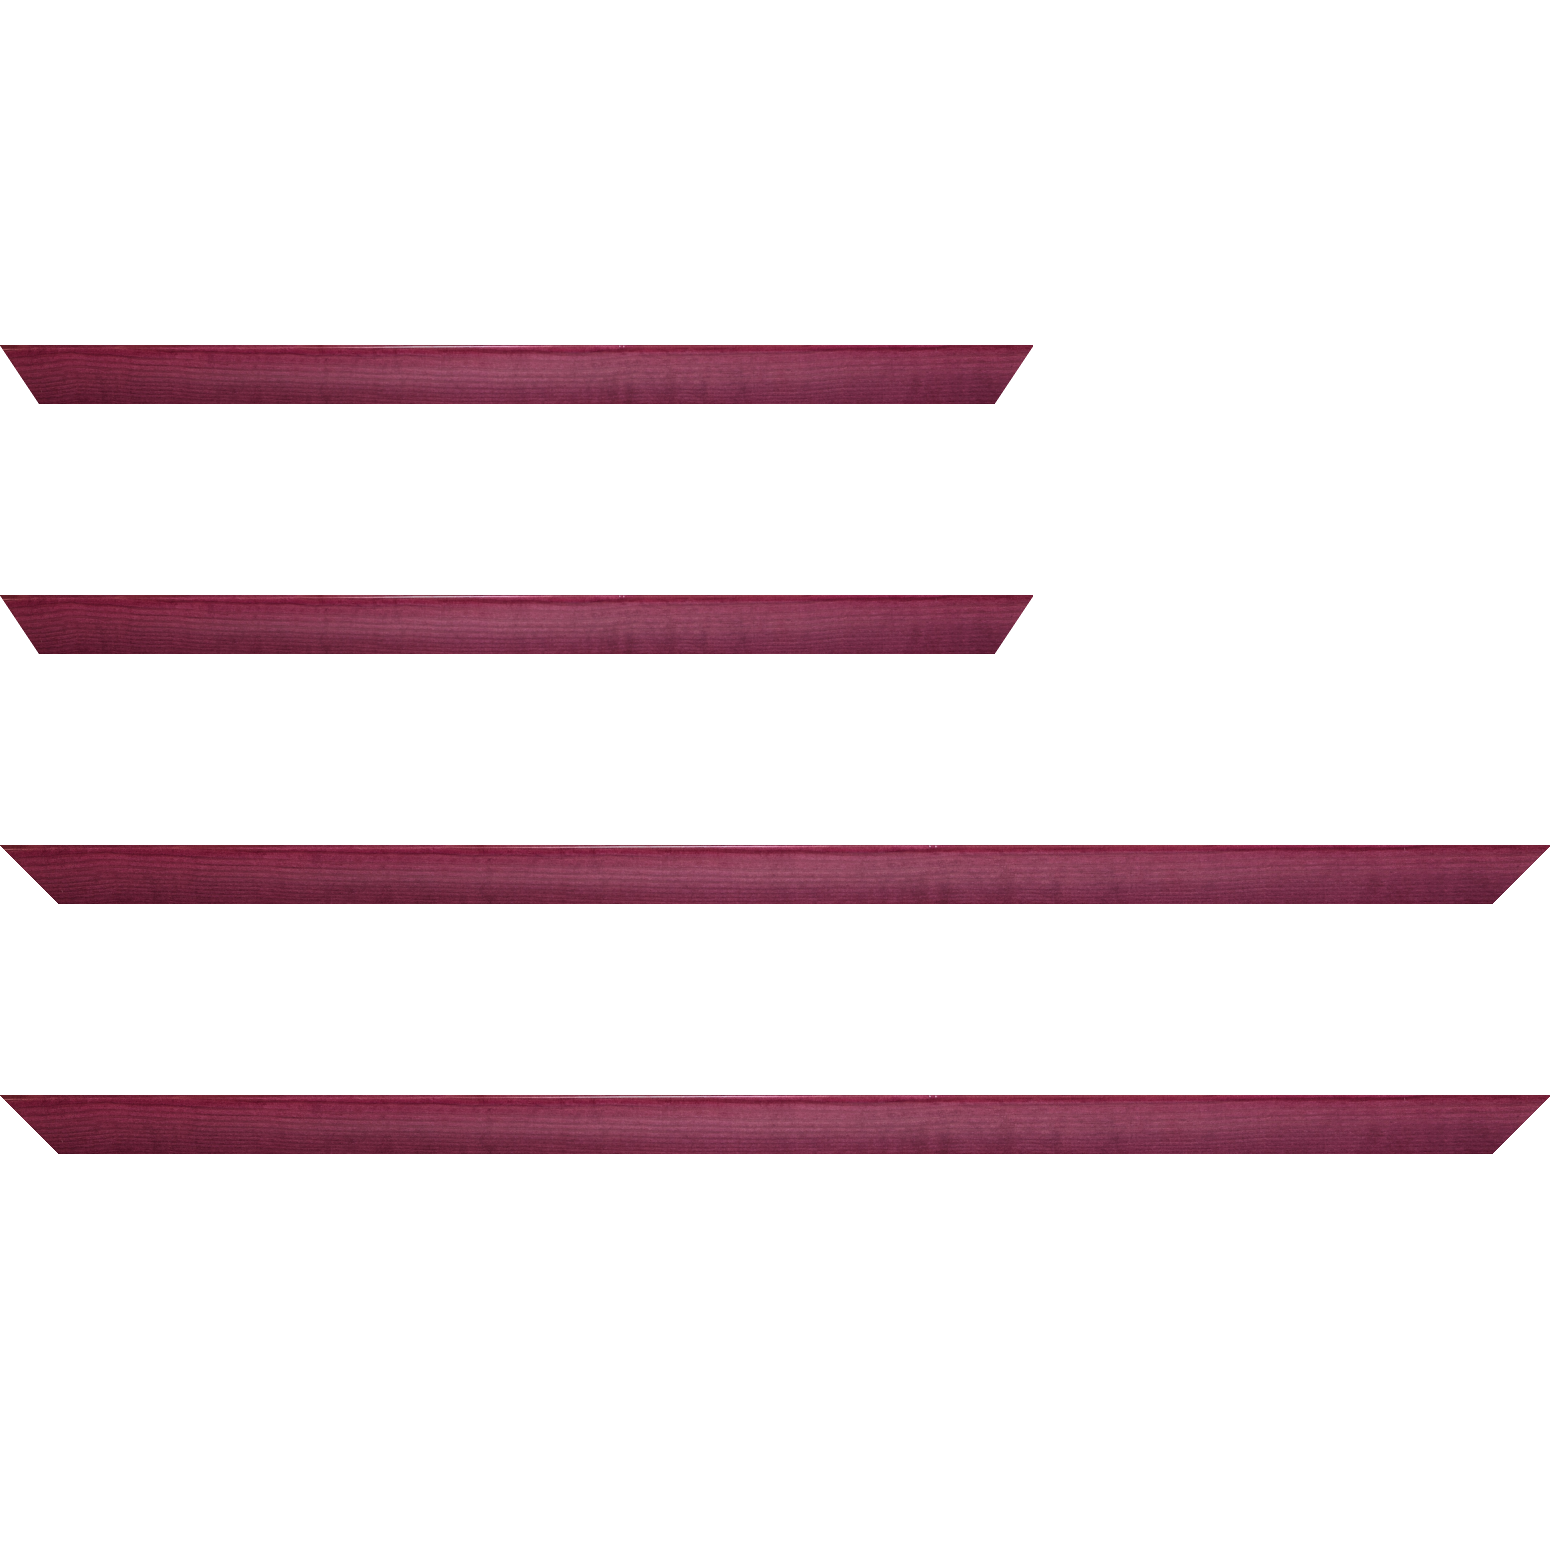 Baguette bois profil arrondi en pente plongeant largeur 2.4cm couleur rose fushia  finition vernis brillant,veine du bois  apparent (pin) , - 59.4x84.1